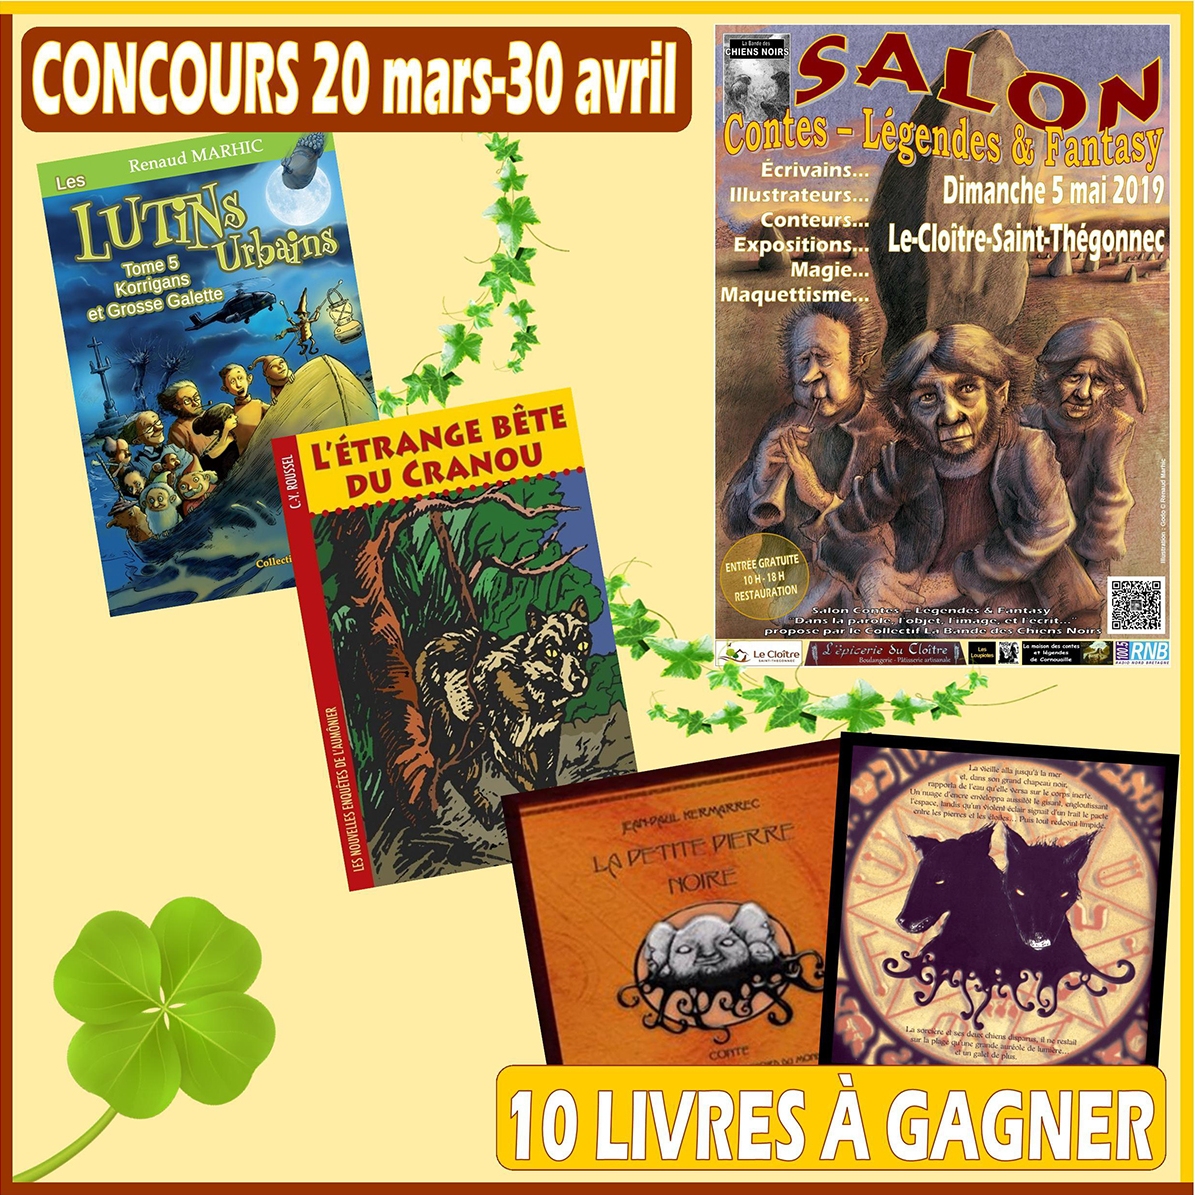 Concours 10 livres à gagner ! (du 20 mars au 30 avril 2019) Concours_salon_contes_legendes_fantasy